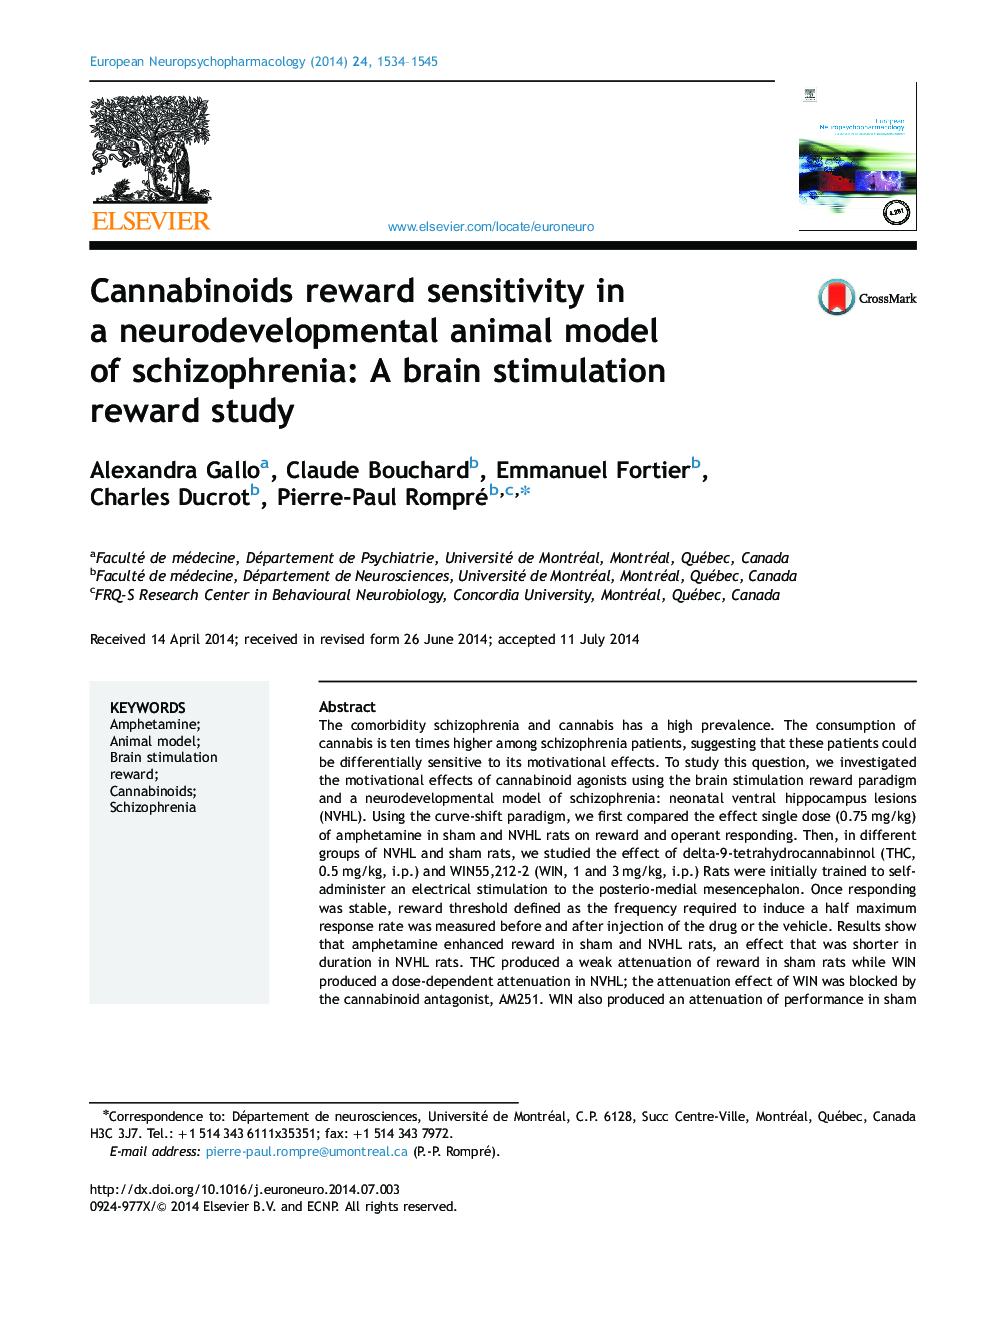 کانابینوئید ها در یک مدل حیوانی عصبی توسعه اسکیزوفرنی پاداش حساسیت: مطالعه پاداش تحریک مغز 